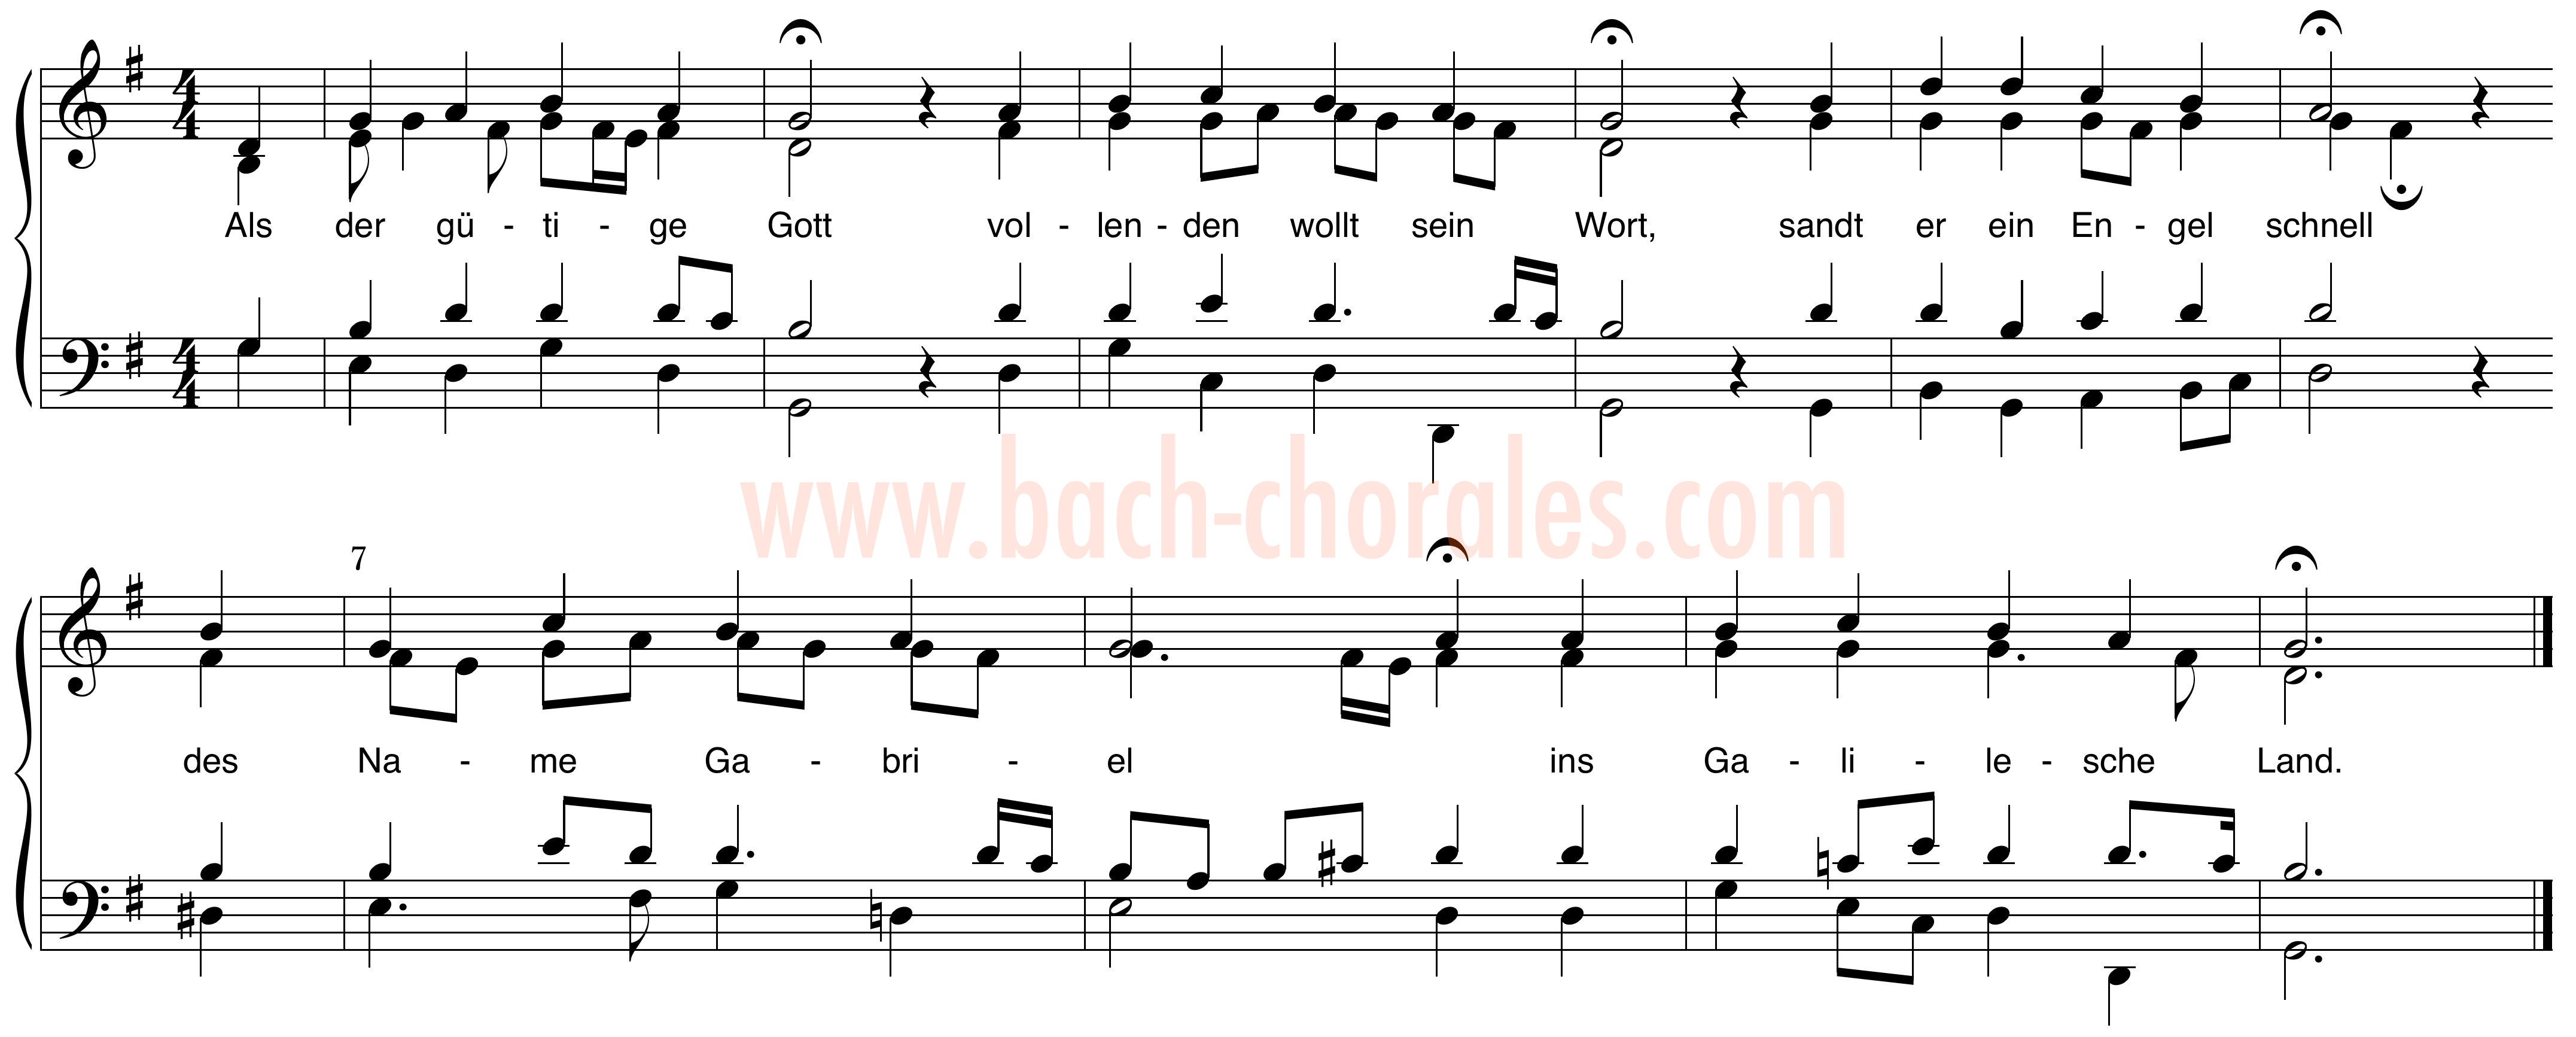 notenbeeld BWV 264 op https://www.bach-chorales.com/